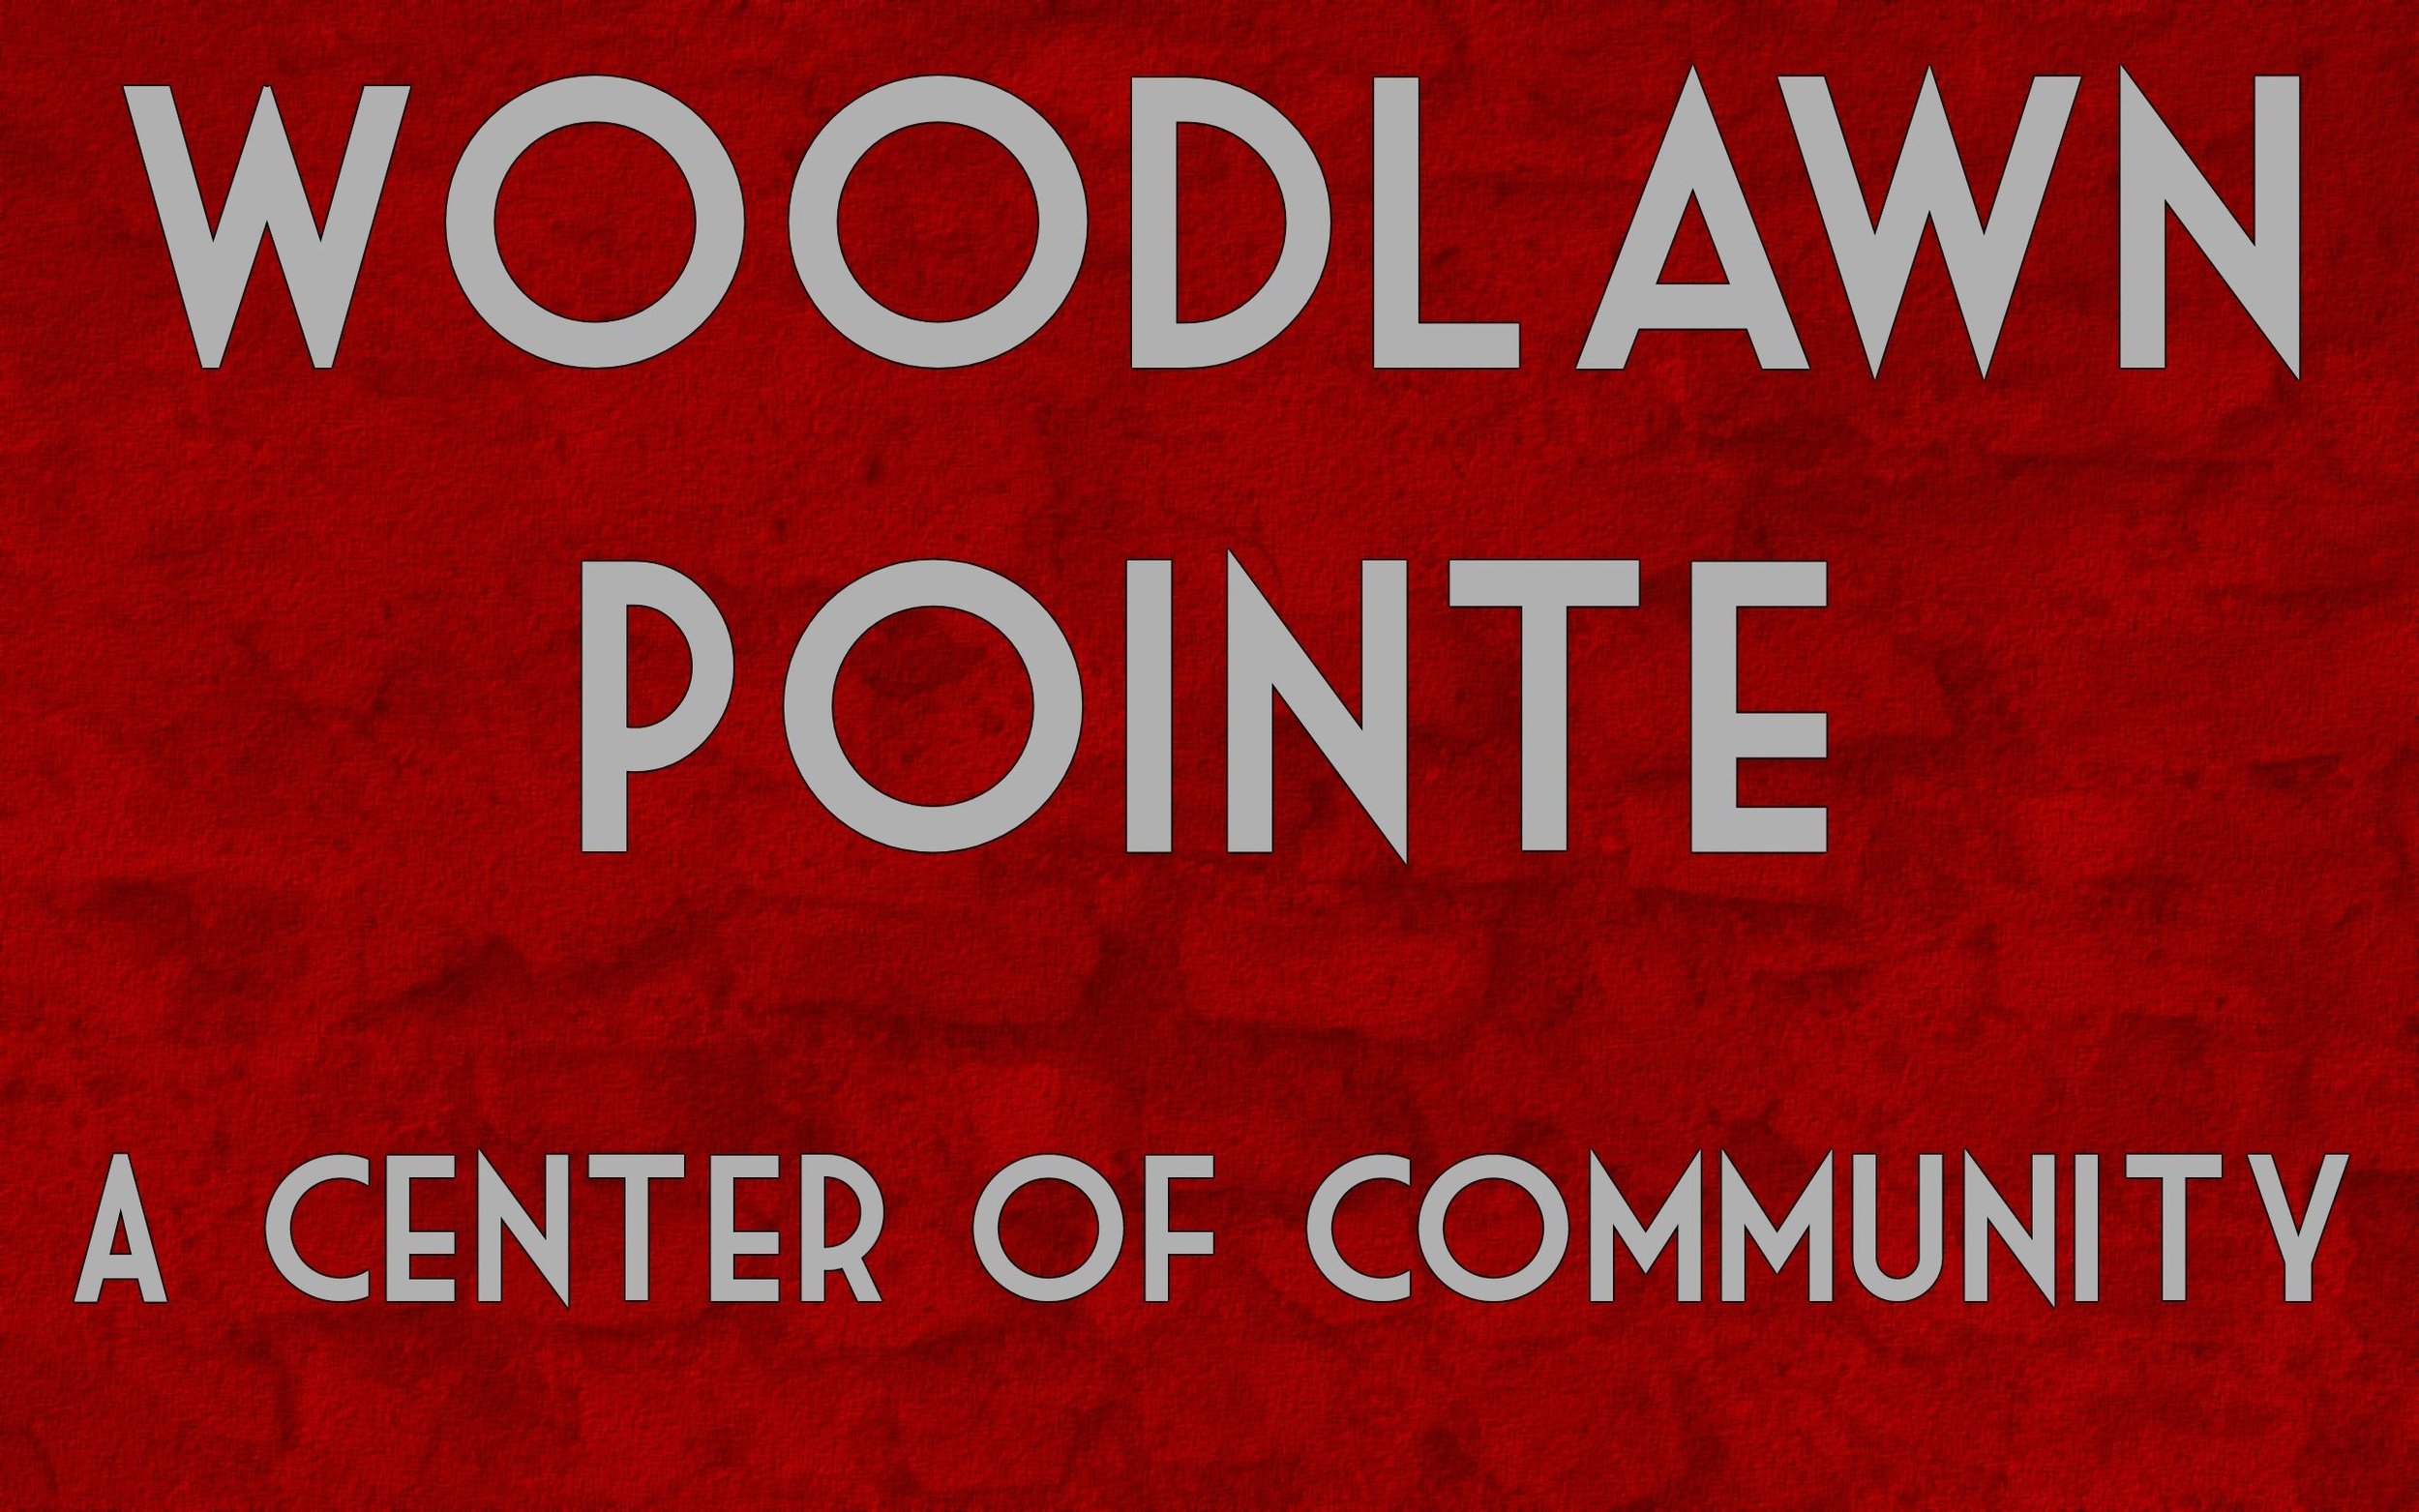 Woodlawn Pointe Logo.jpg